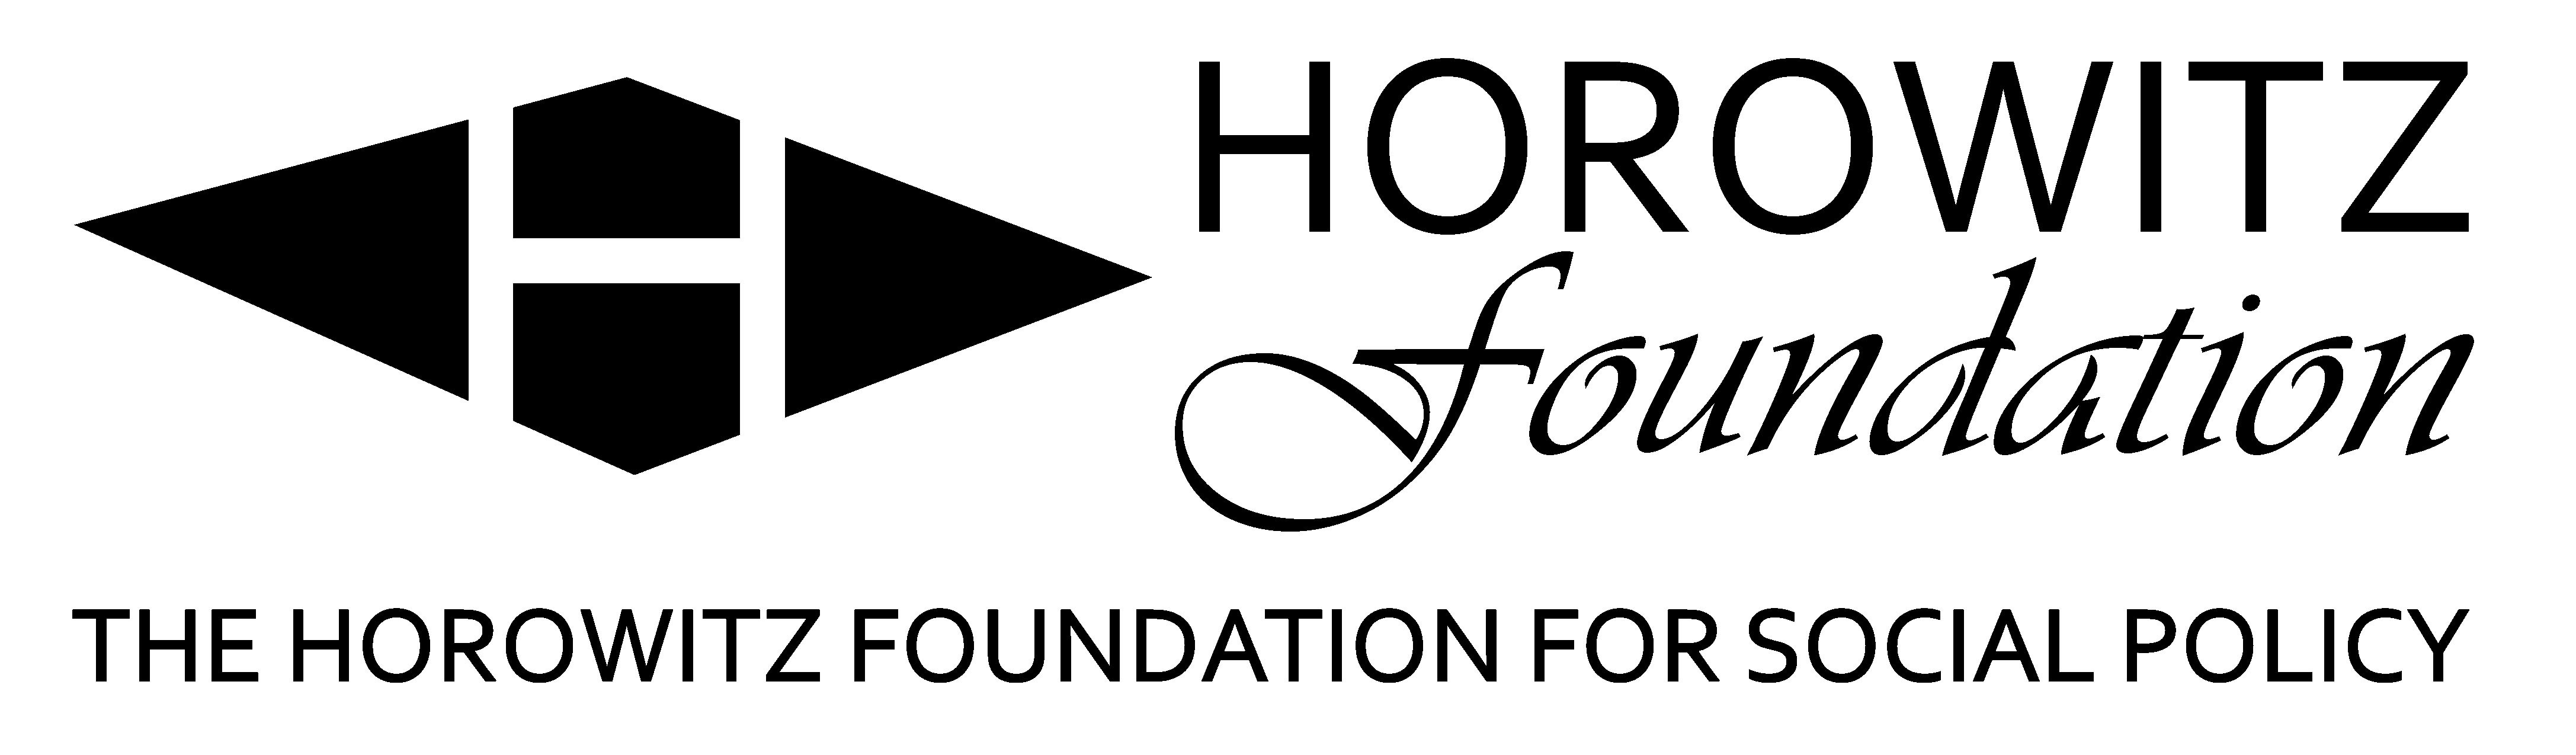 Horowitz foundation